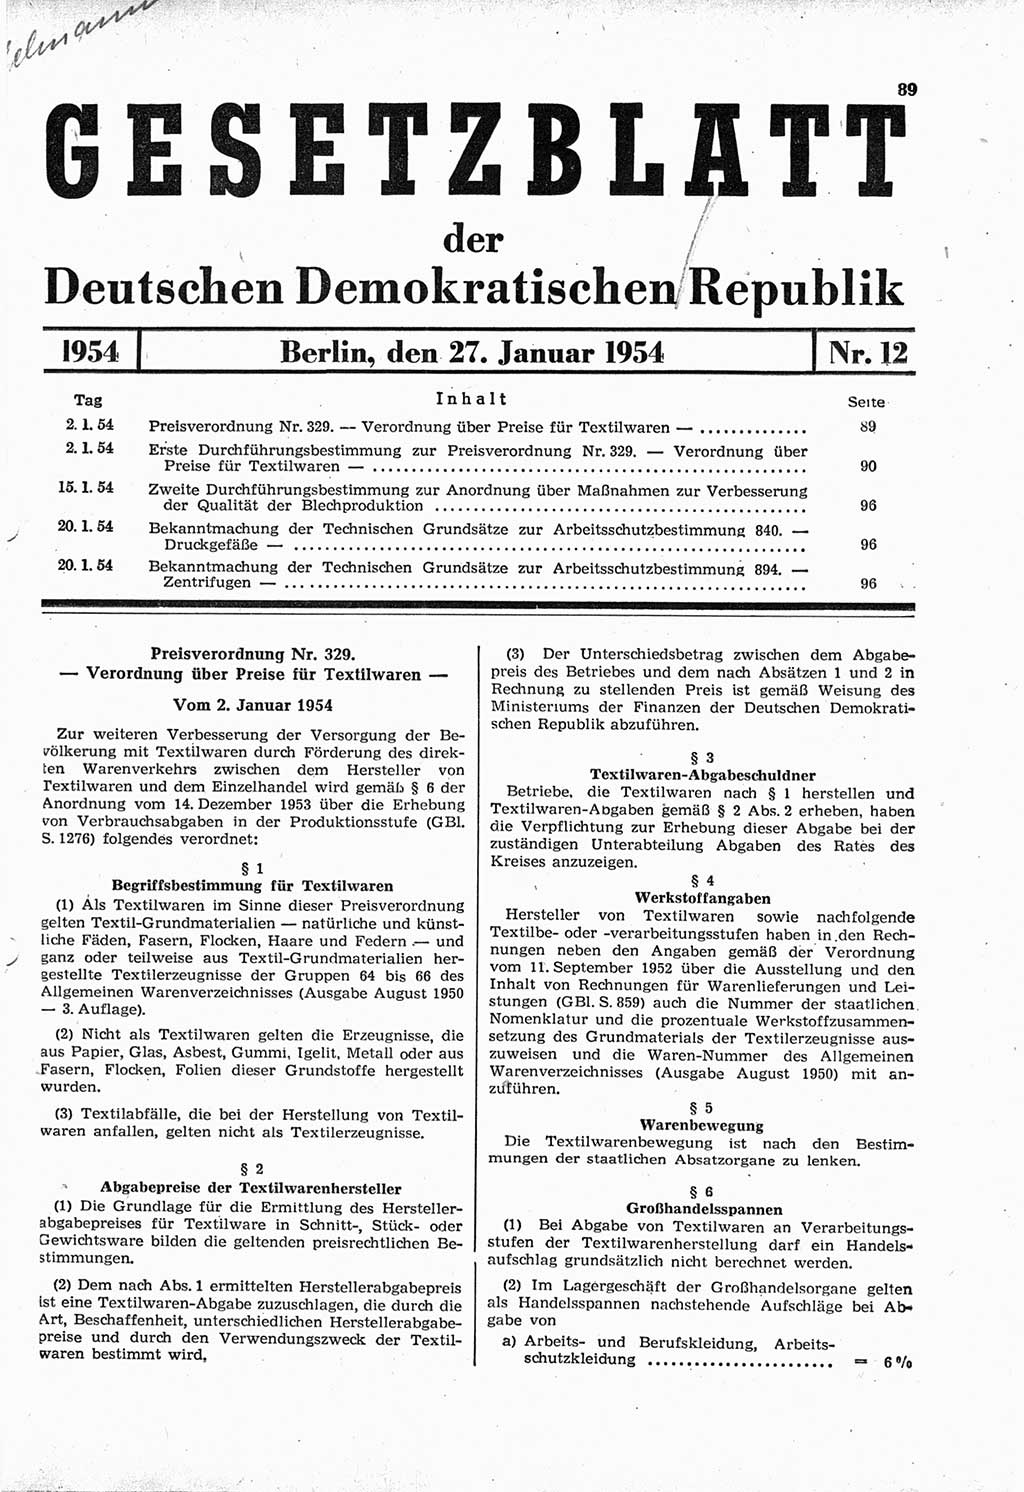 Gesetzblatt (GBl.) der Deutschen Demokratischen Republik (DDR) 1954, Seite 89 (GBl. DDR 1954, S. 89)